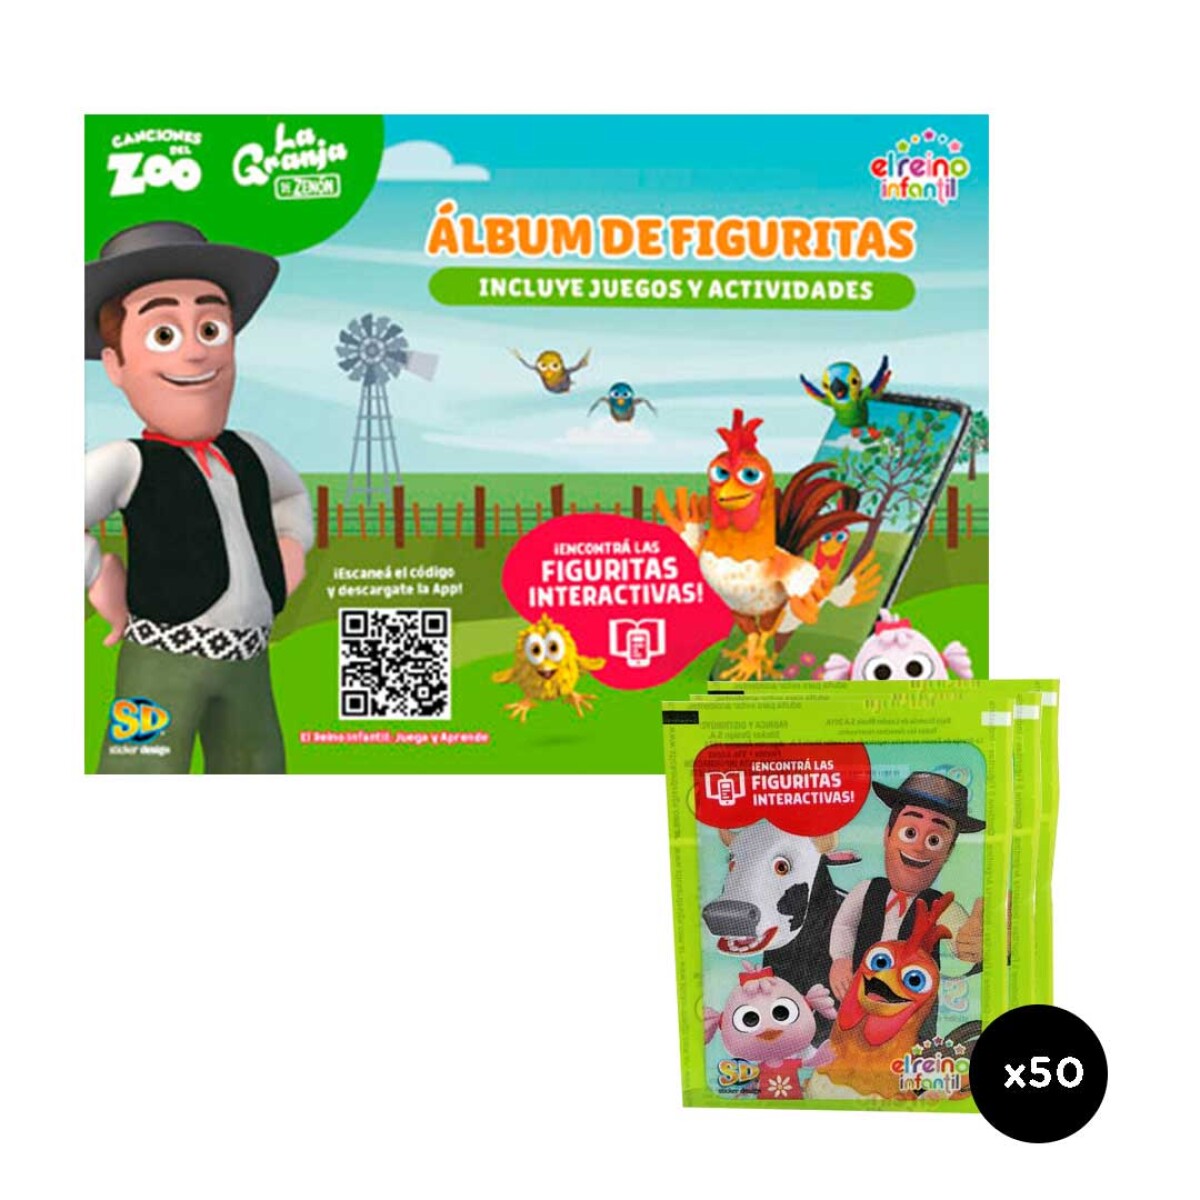 Album con figuritas interactivas Zenon Canciones del Zoo - 001 